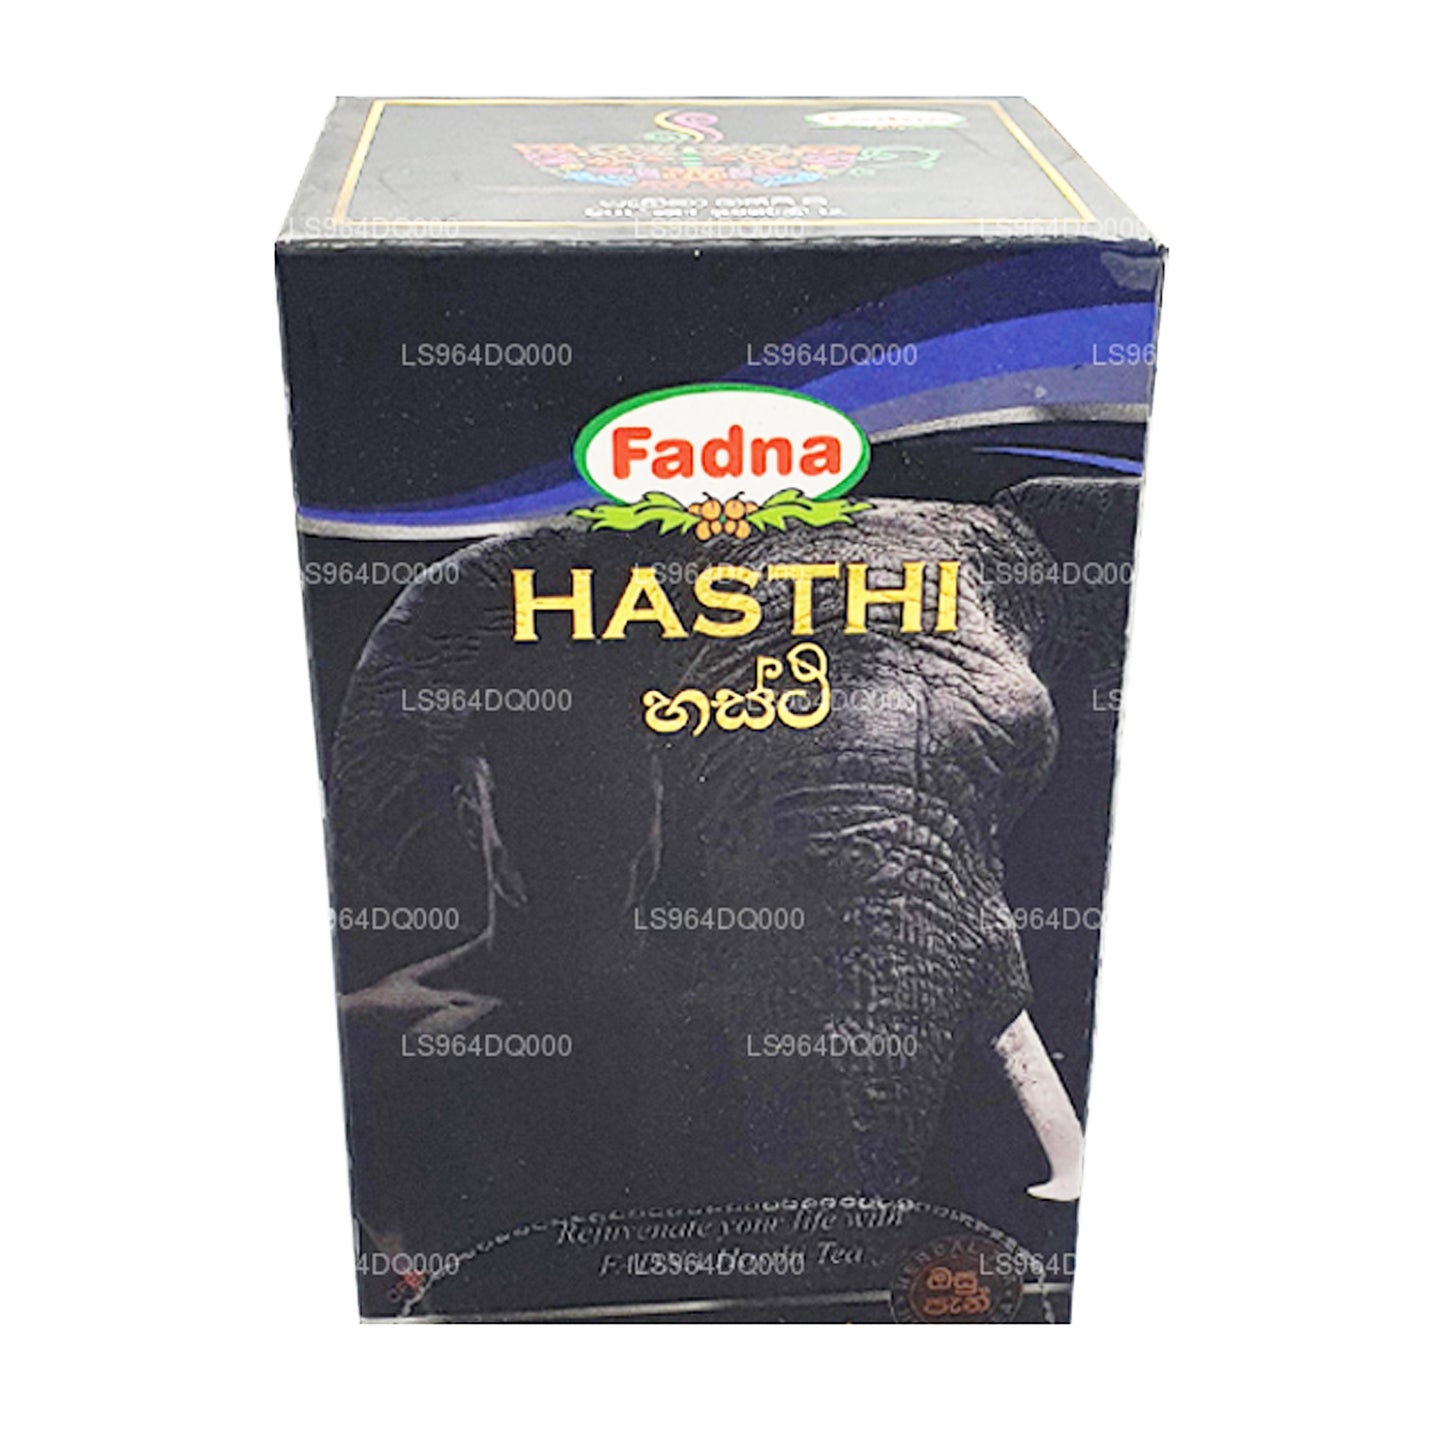 Fadna Hasthi urtete (40g) 20 teposer